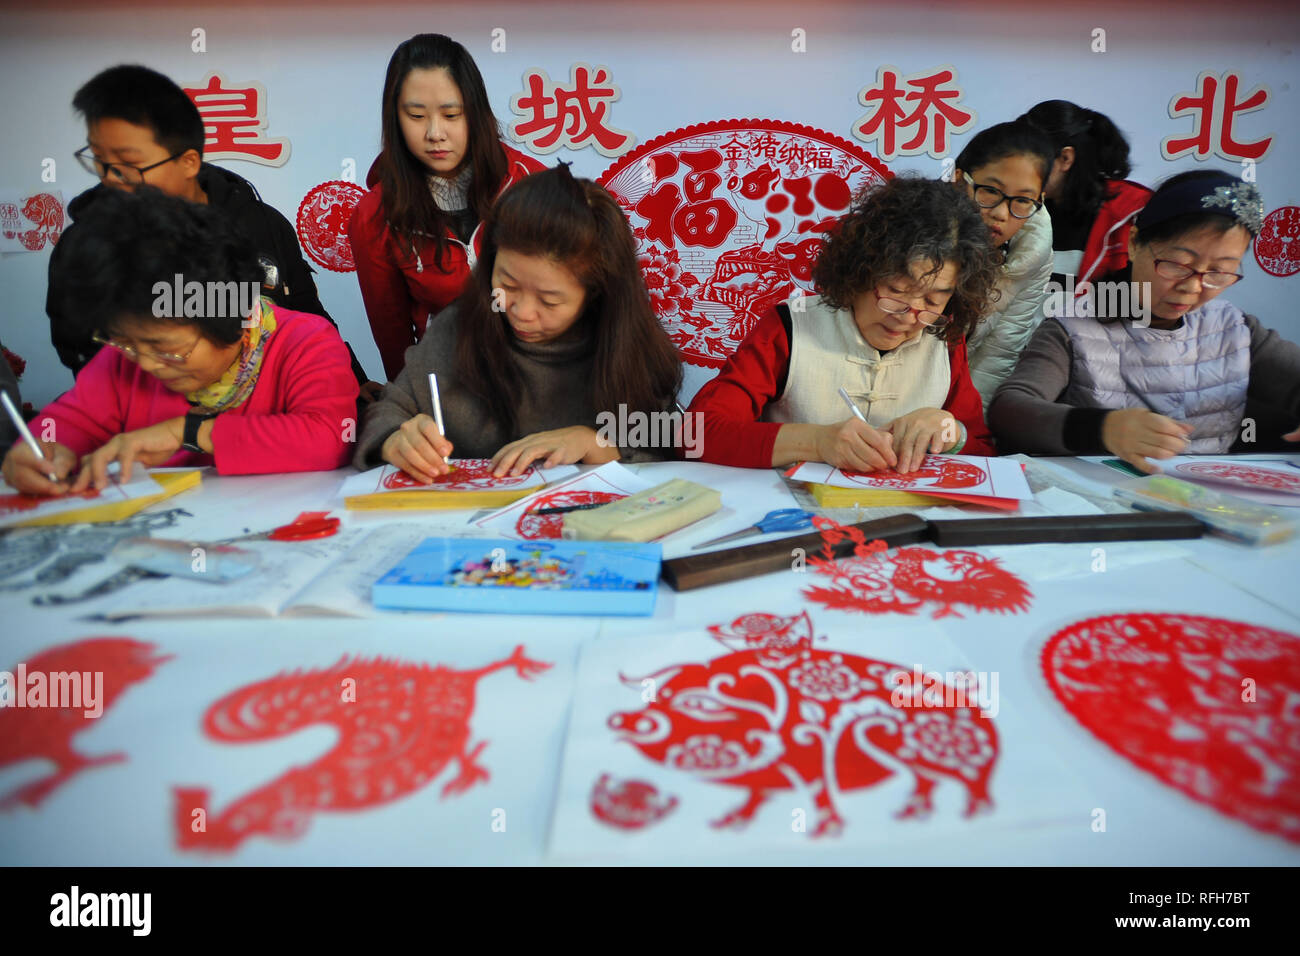 Januar 26, 2019 - Zhangjiakou, Zhangjiakou, China - Zhangjiakou, CHINA - Menschen machen papercuttings in Zhangjiakou,ChinaÃ¢â'¬â"¢s Provinz Hebei. (Bild: © SIPA Asien über ZUMA Draht) Stockfoto